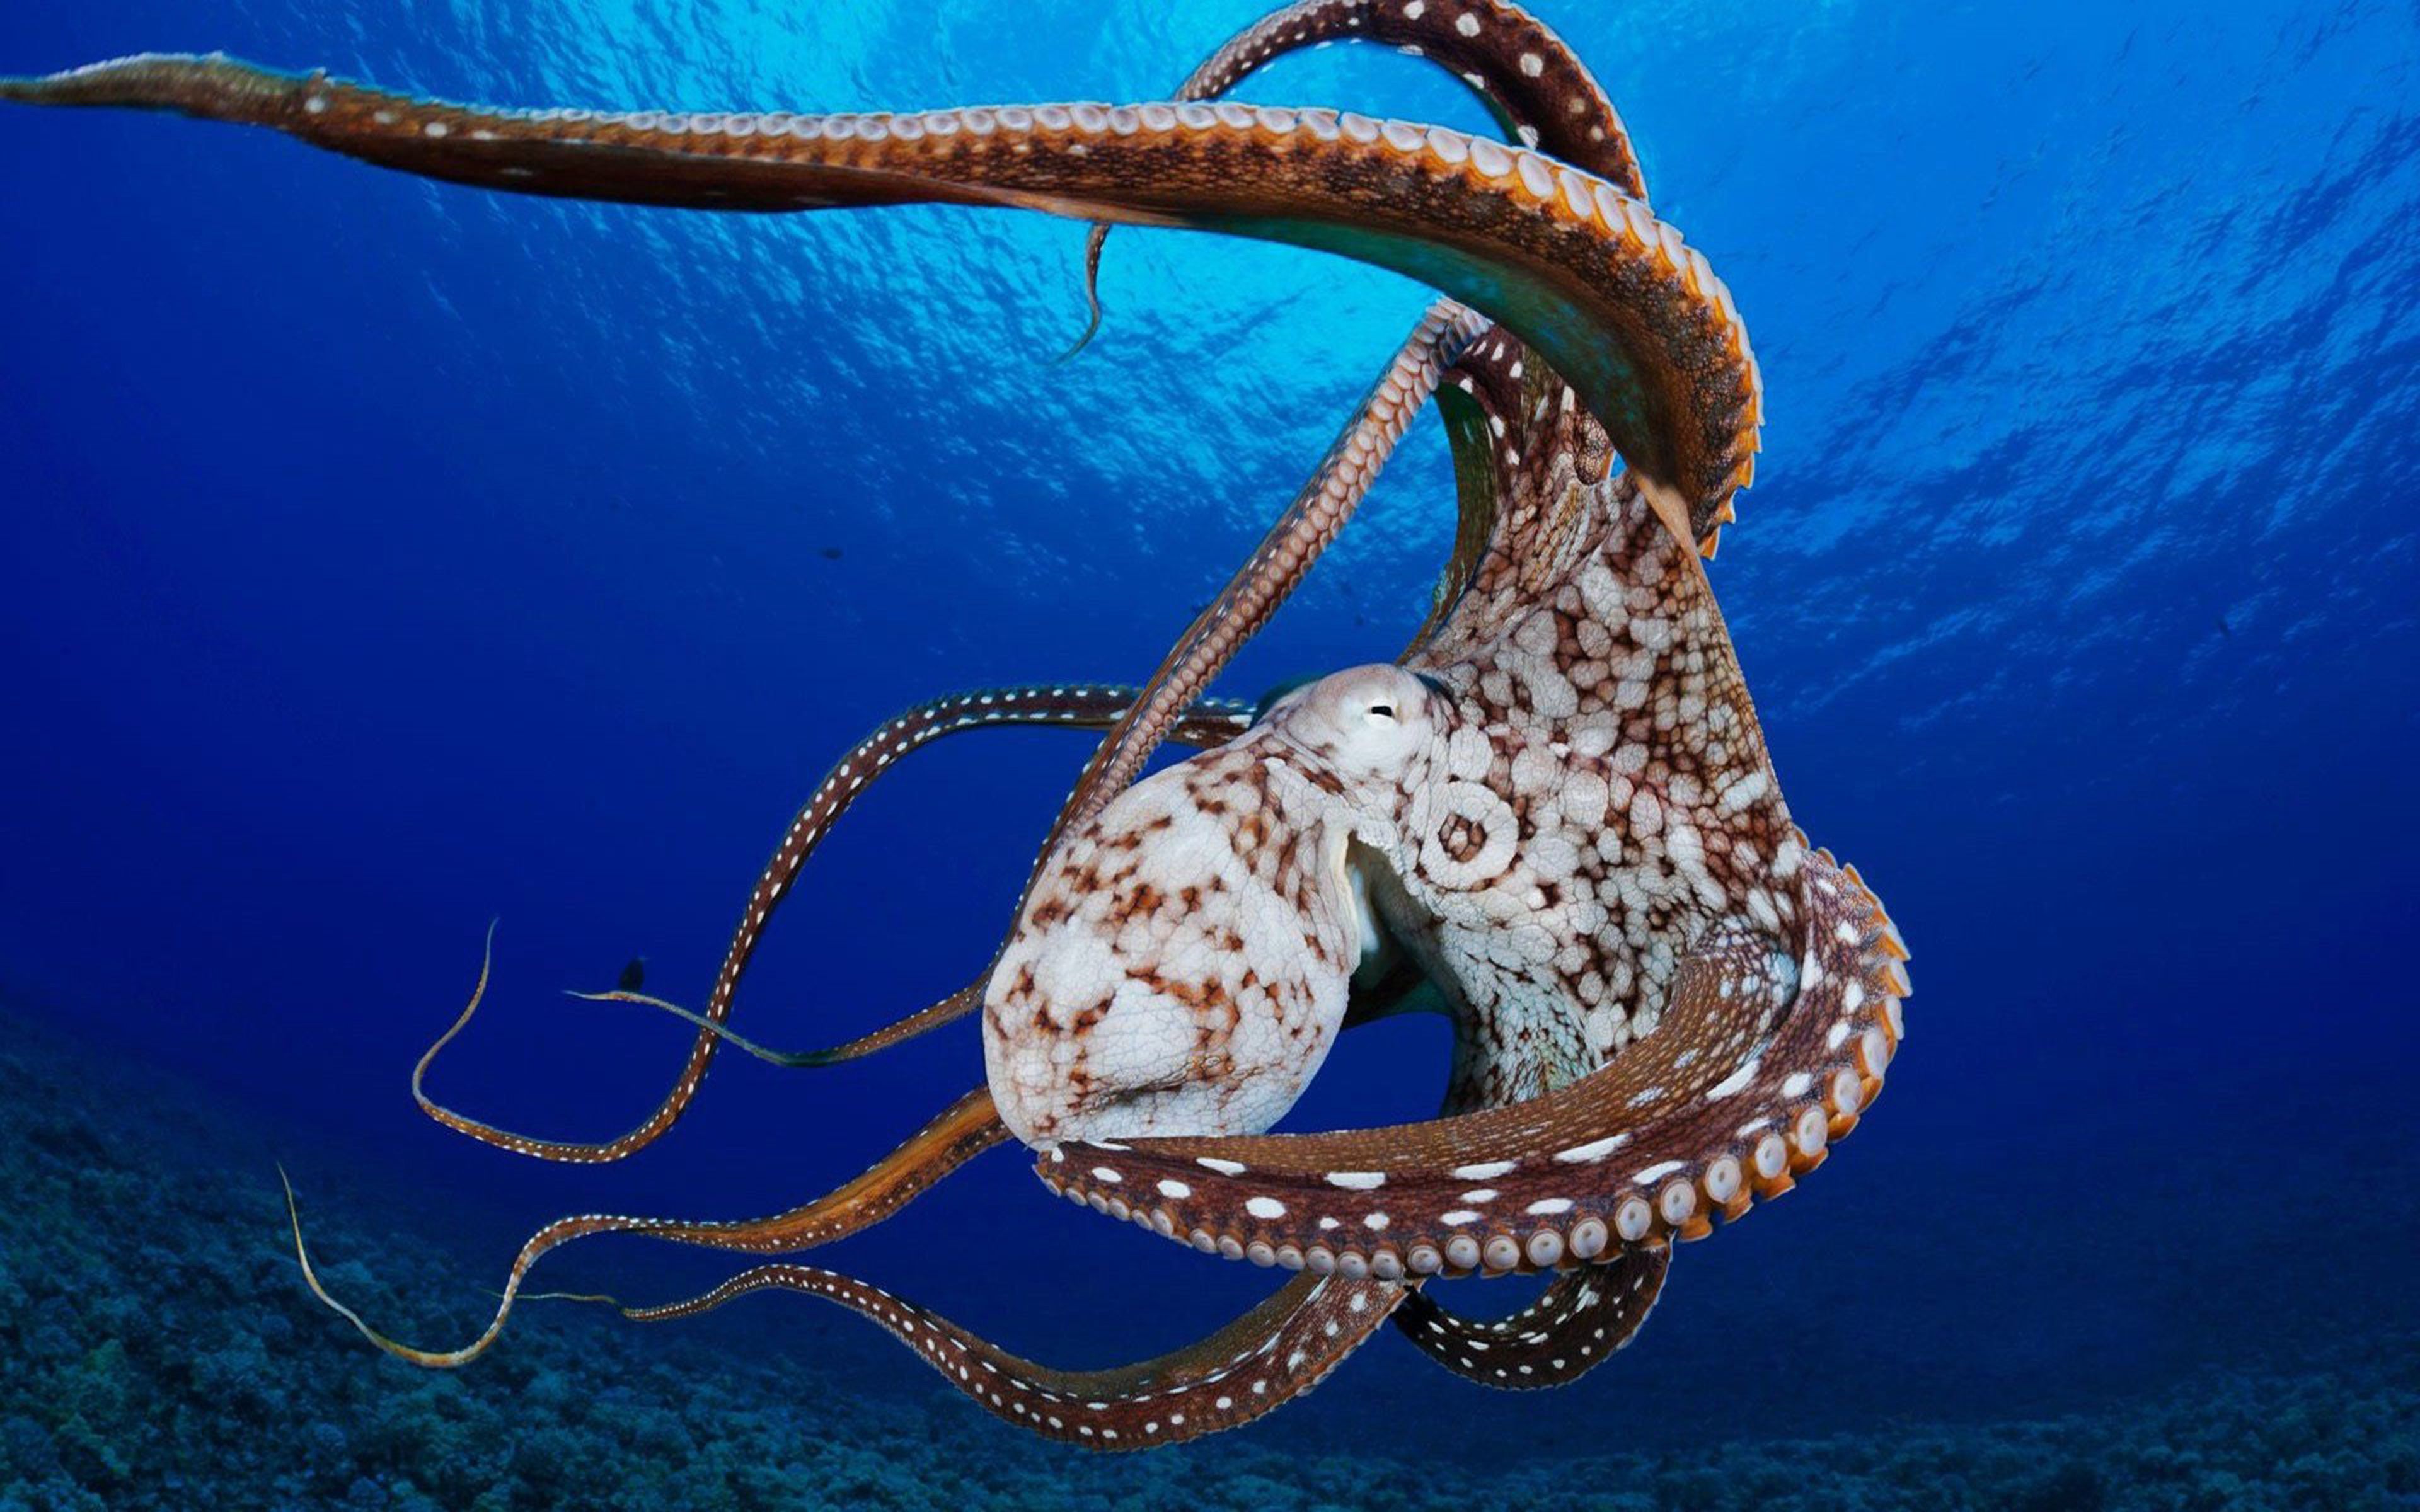 Octopus HD Wallpaper Octopus Men Live Only A Few Months After